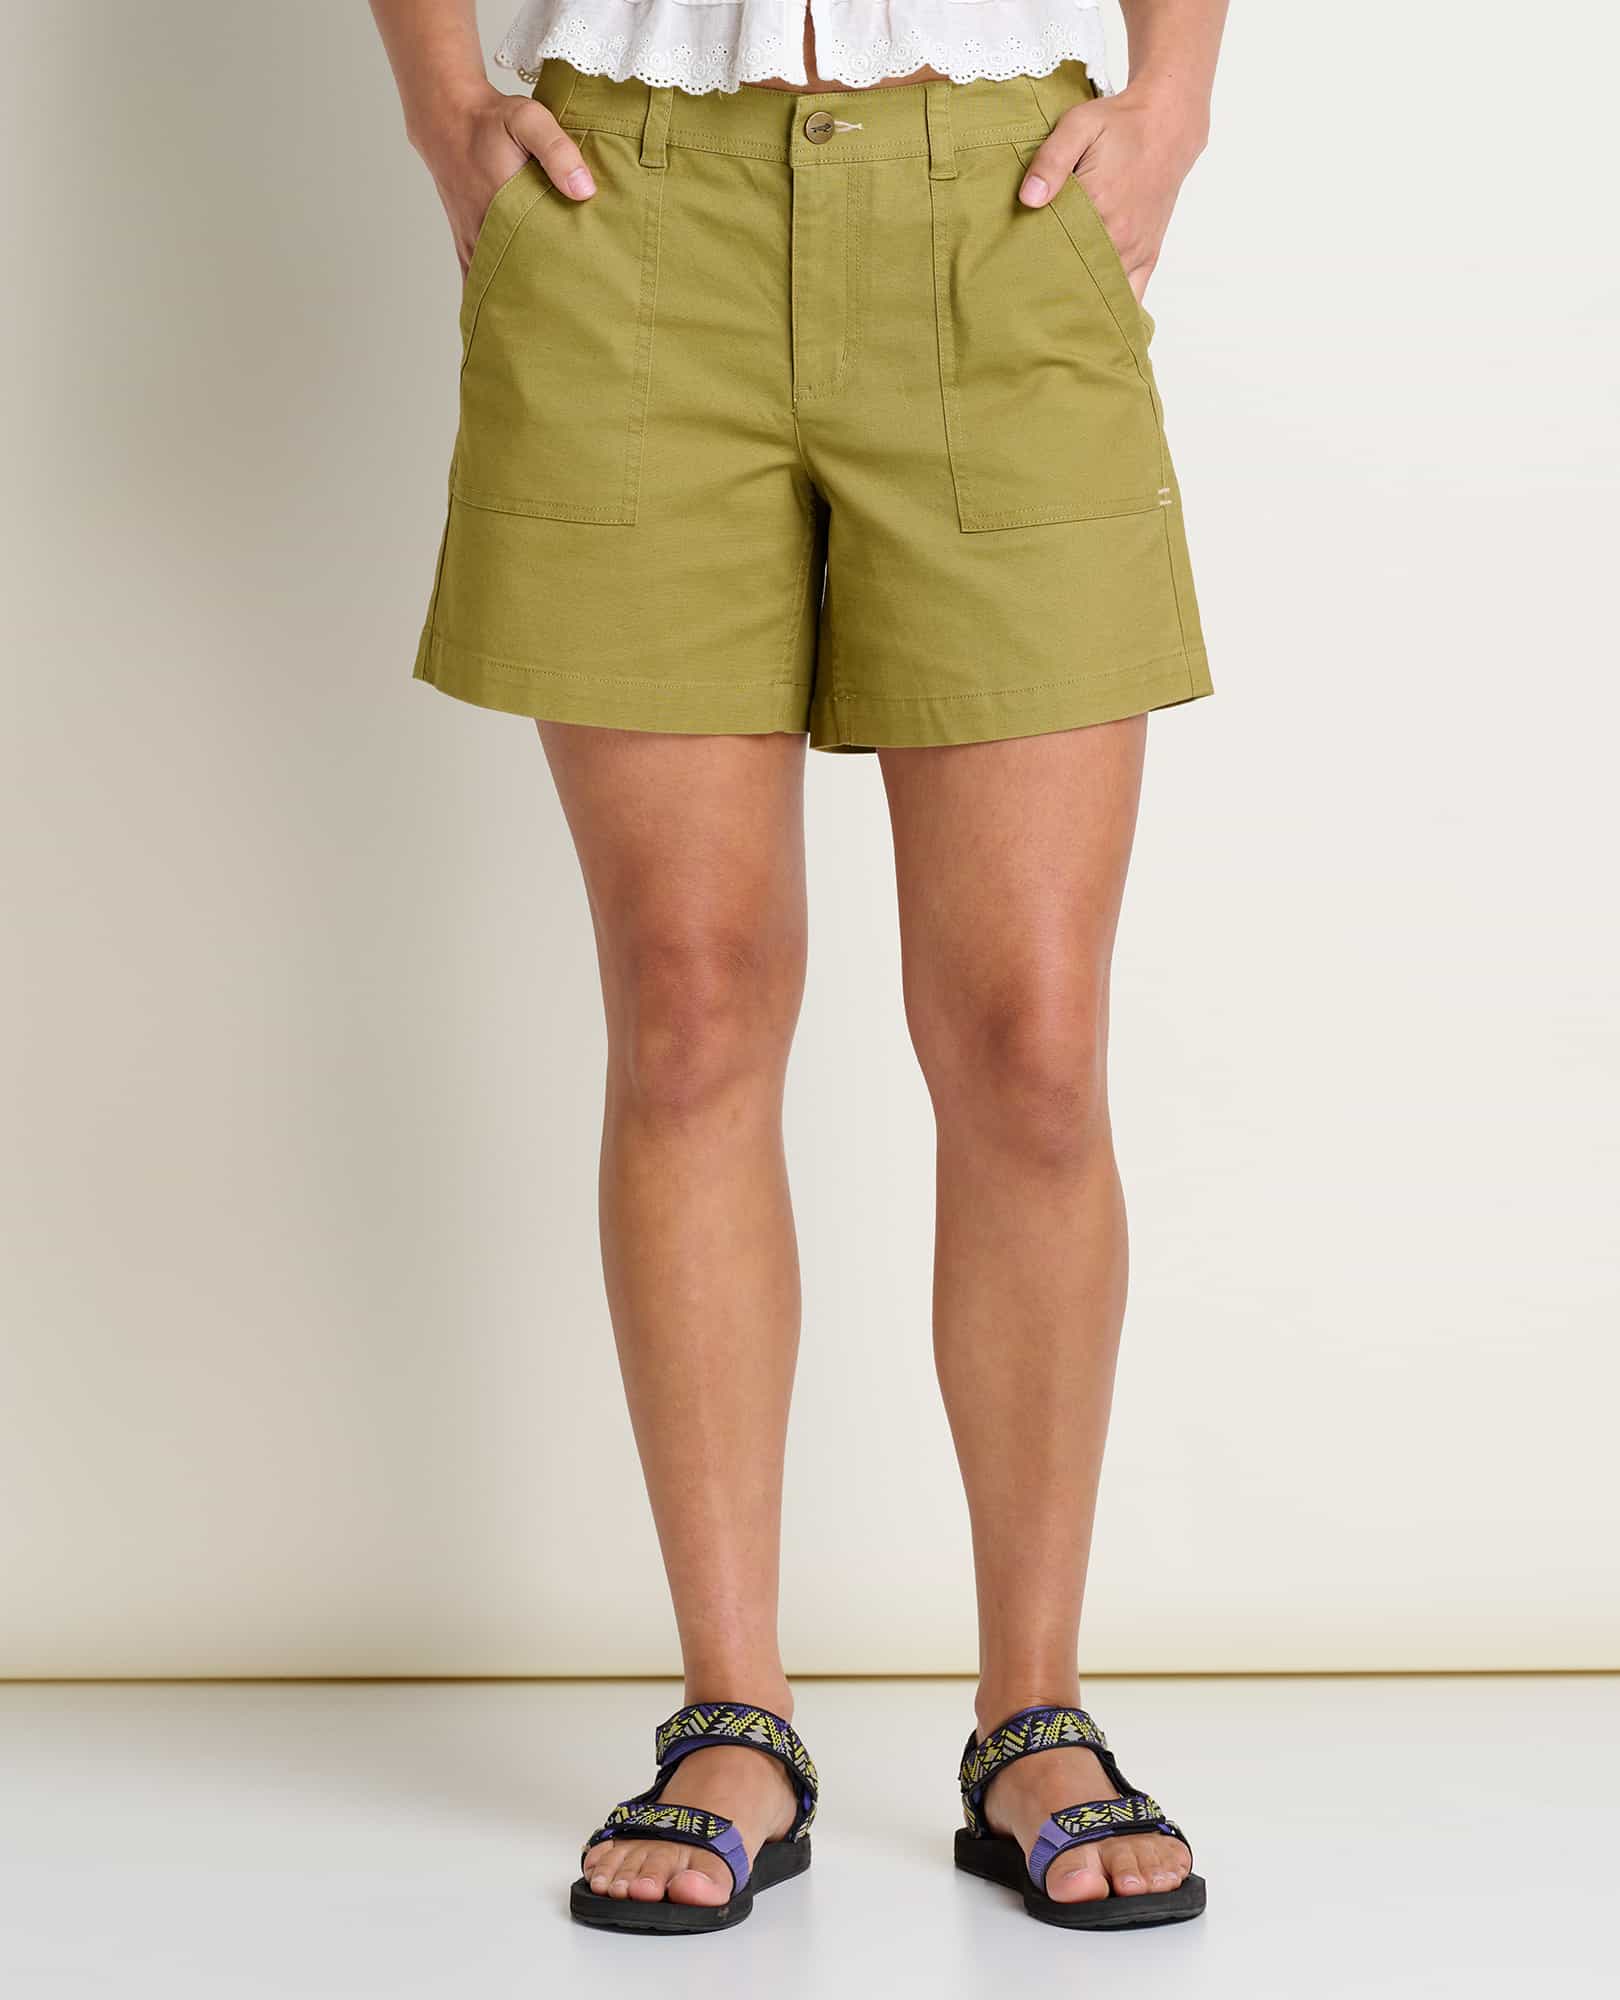 Women's Shorts, Eco-Friendly Shorts for Women